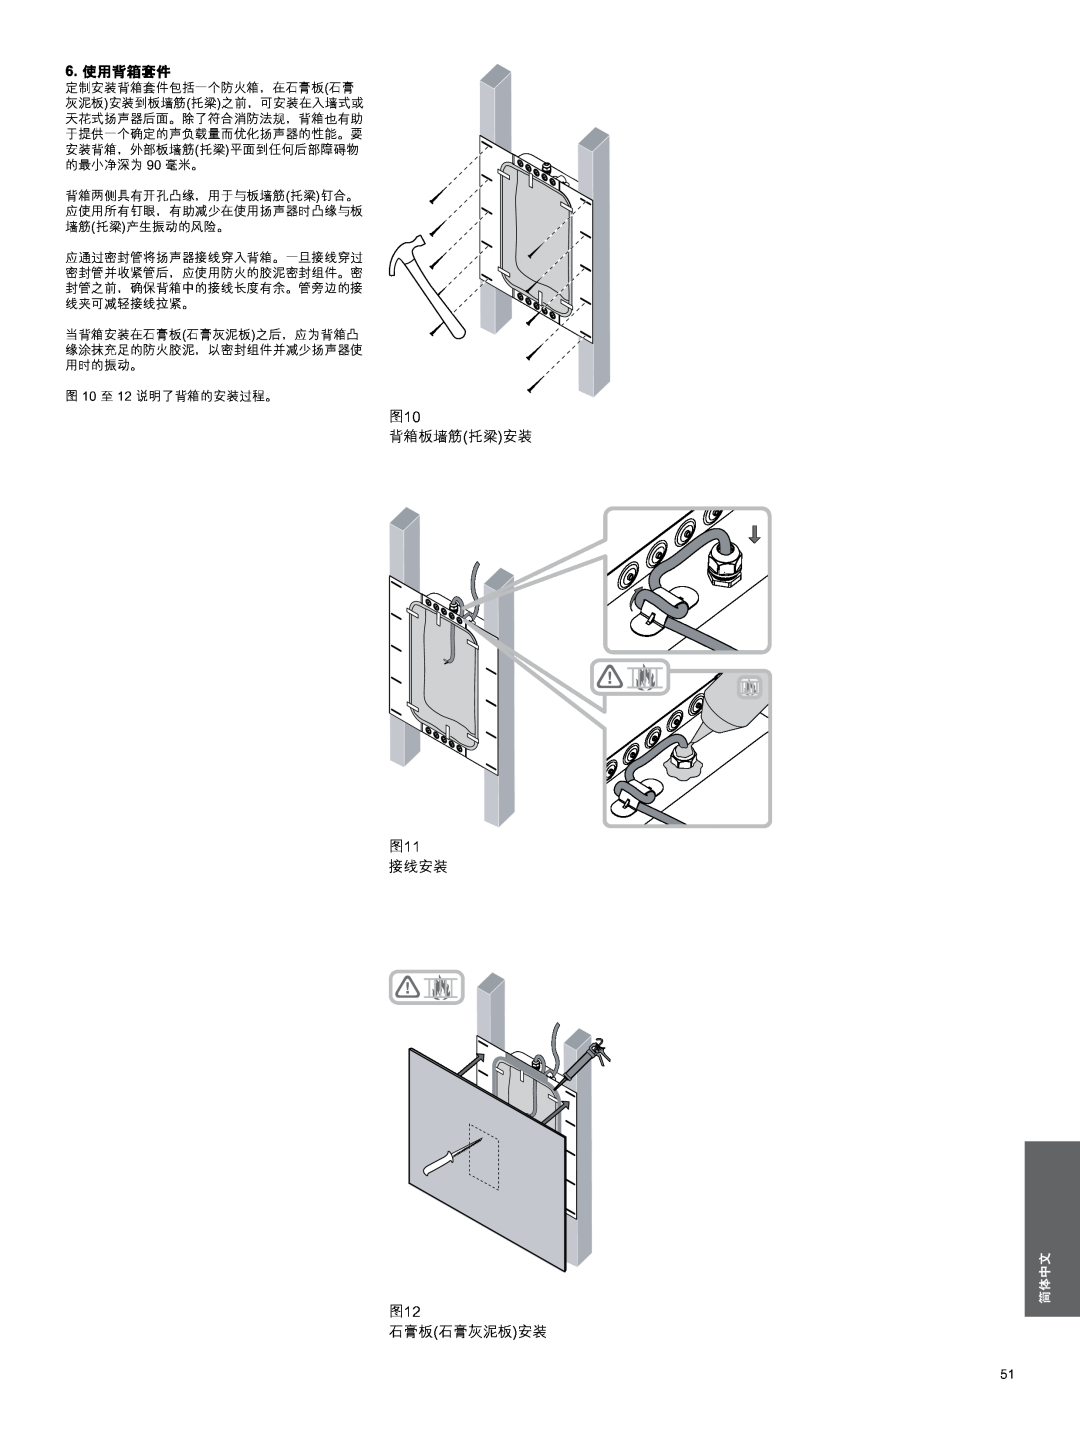 Bowers & Wilkins CWM3 manual 6.使用背箱套件, 背箱板墙筋托梁安装, 接线安装, 石膏板石膏灰泥板安装, 简体中文 